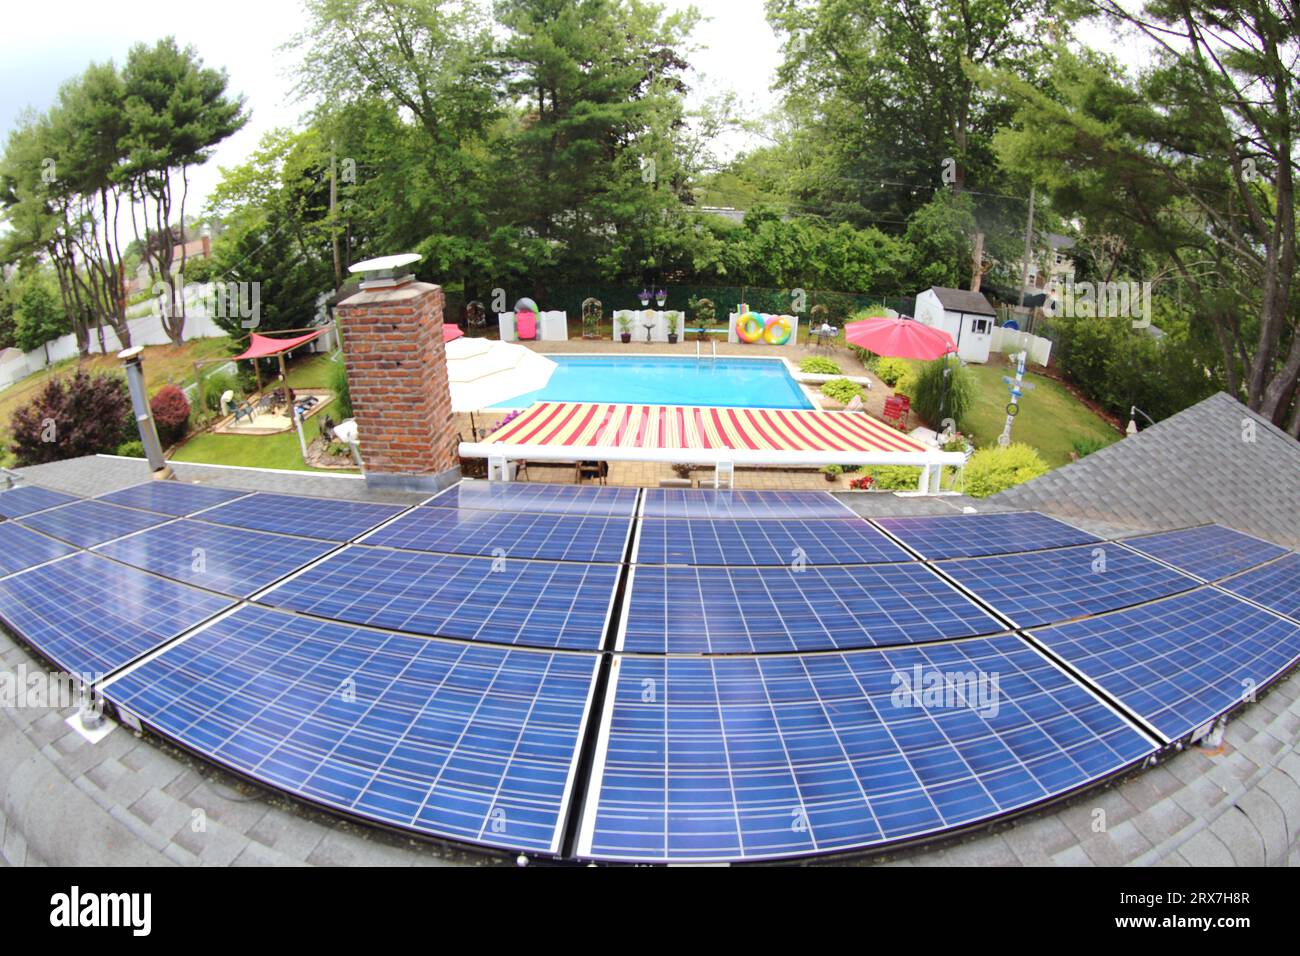 Hinterhof-Inround-Pool und Terrasse und Sonnendach-Solarzellen Stockfoto